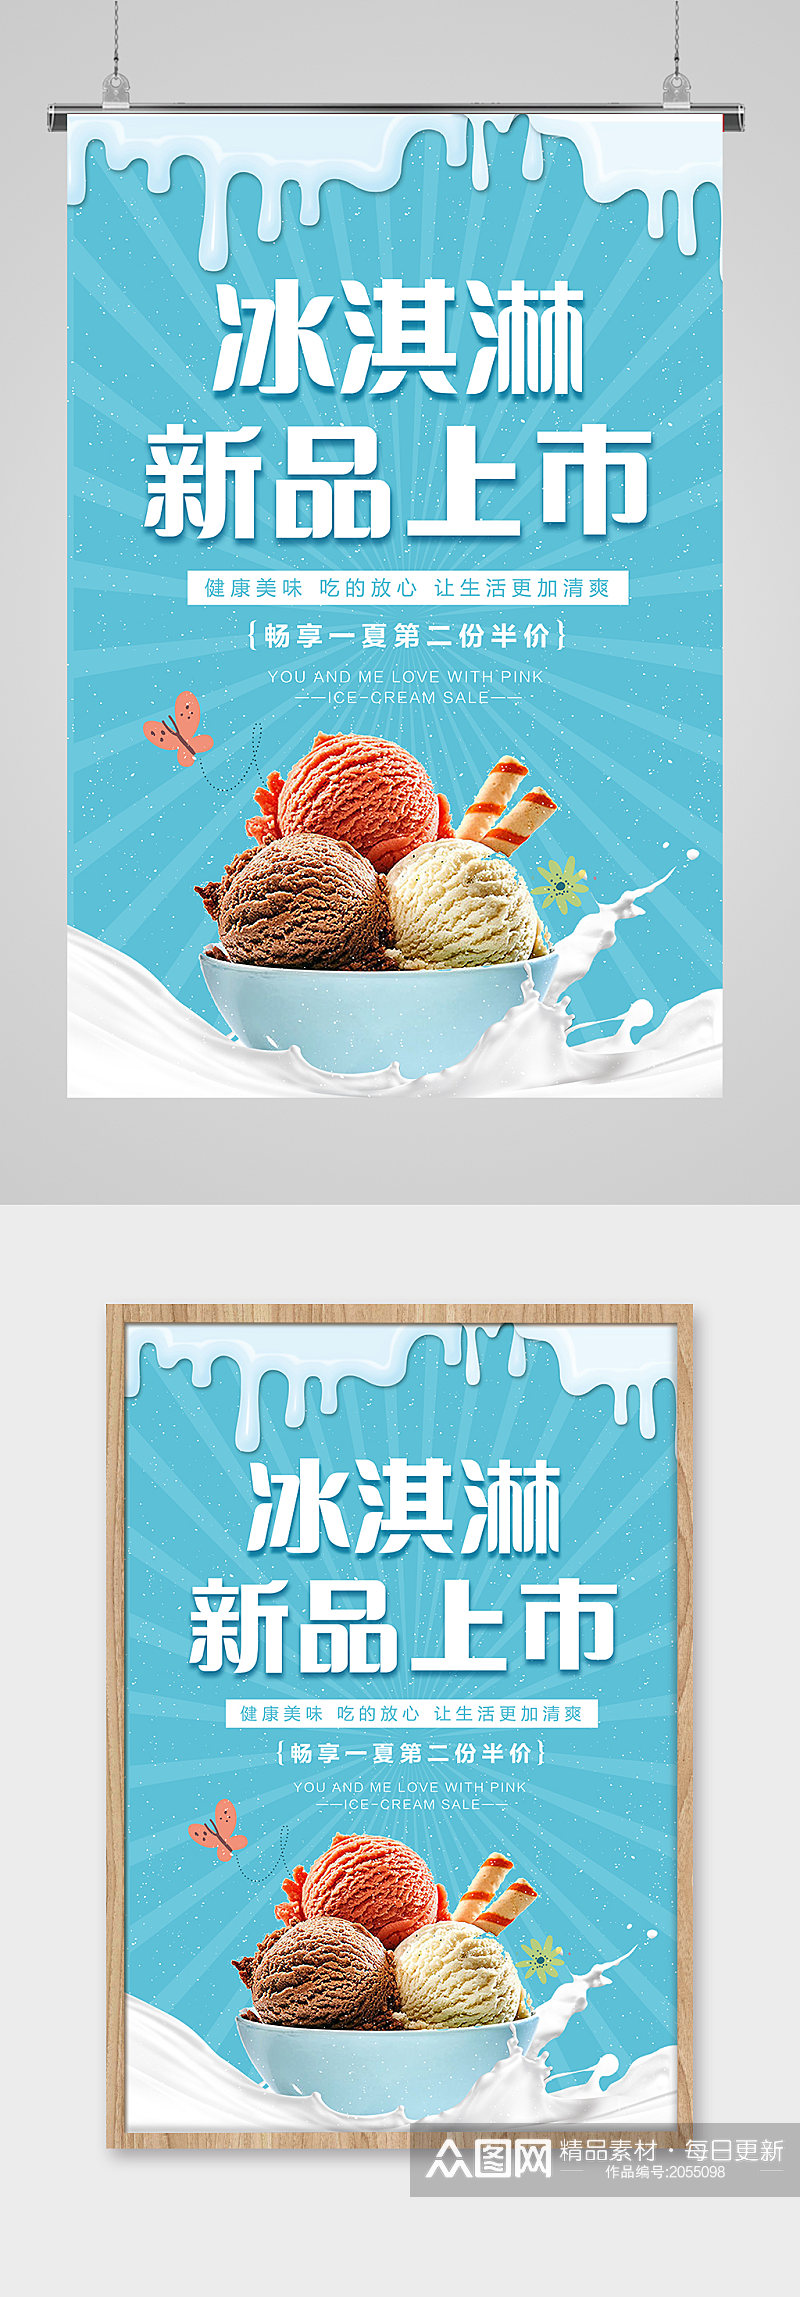 蓝色冰淇淋雪糕新品上市素材